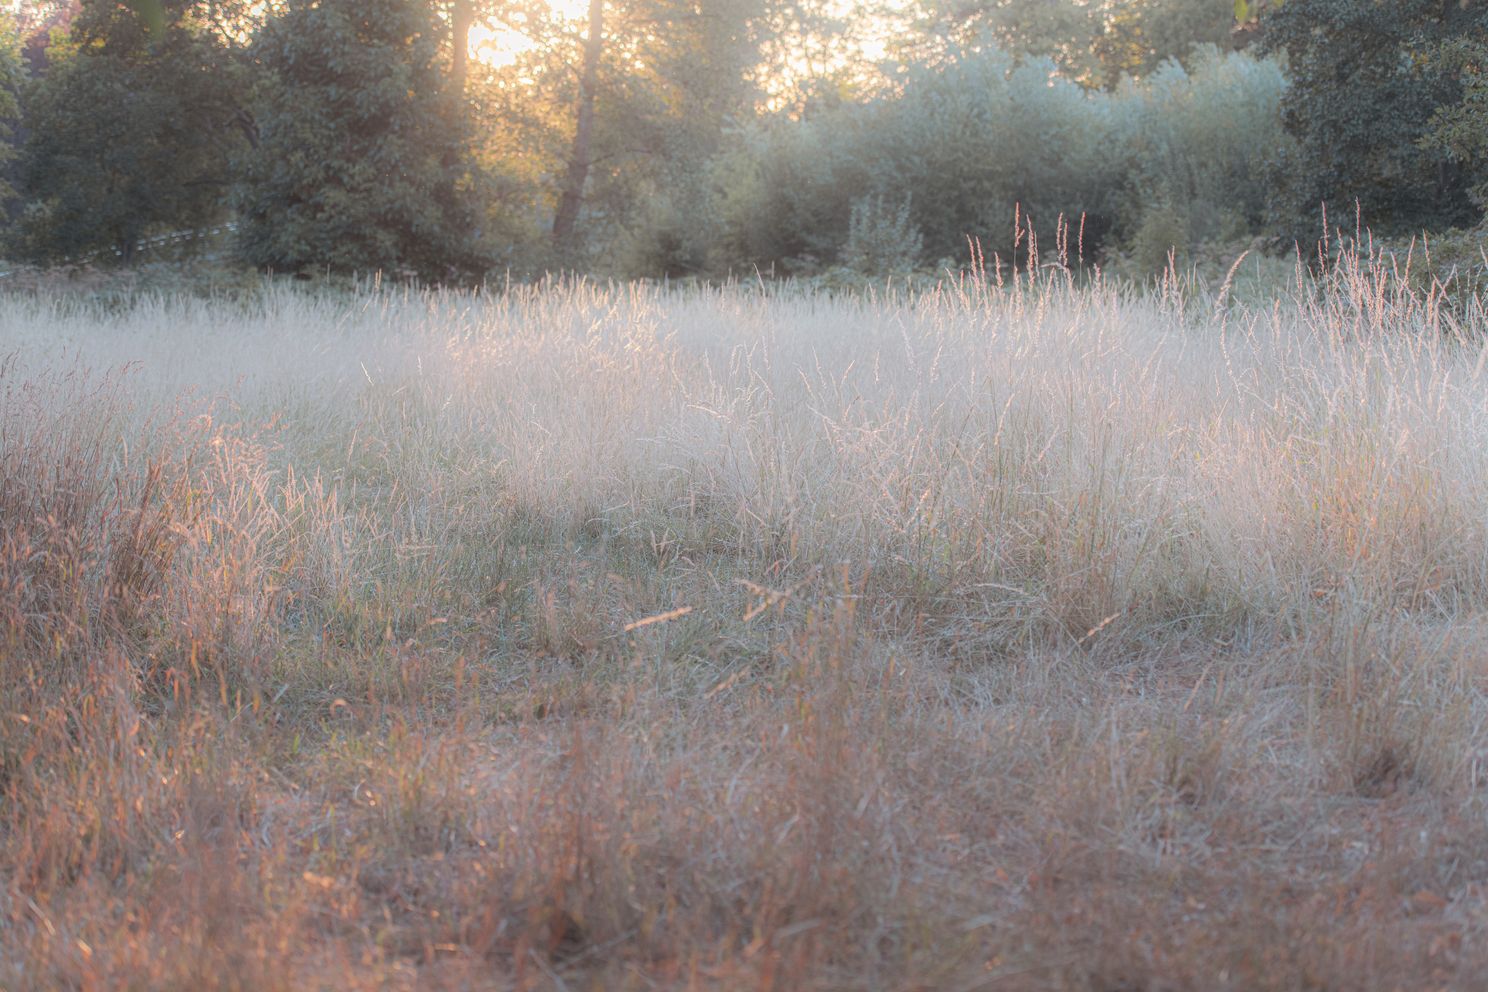 Grass field, Beddington Park London, golden hour